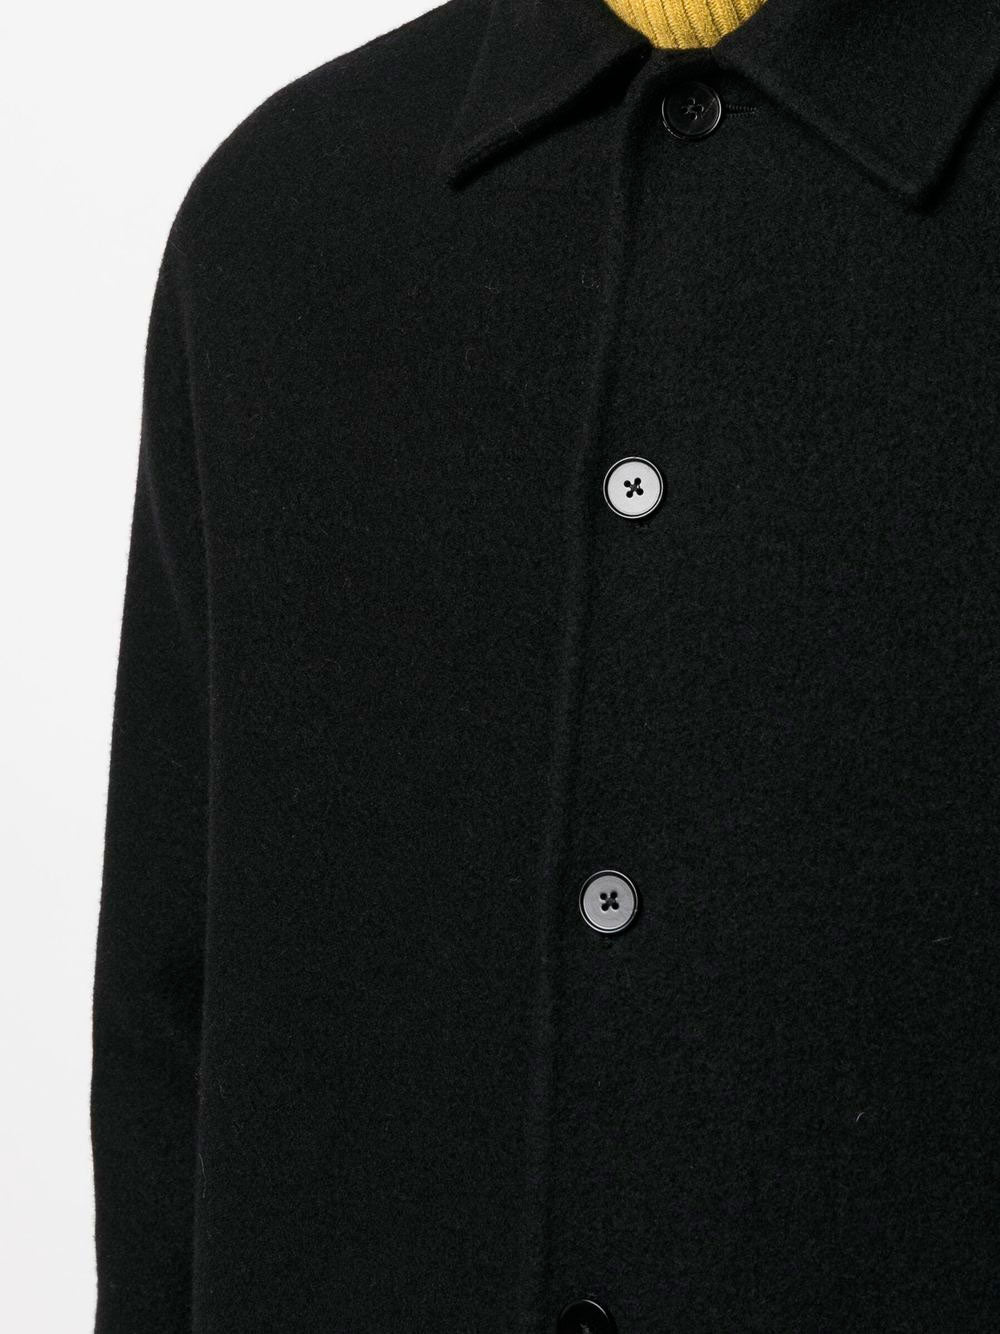 Button-up wool shirt jacket